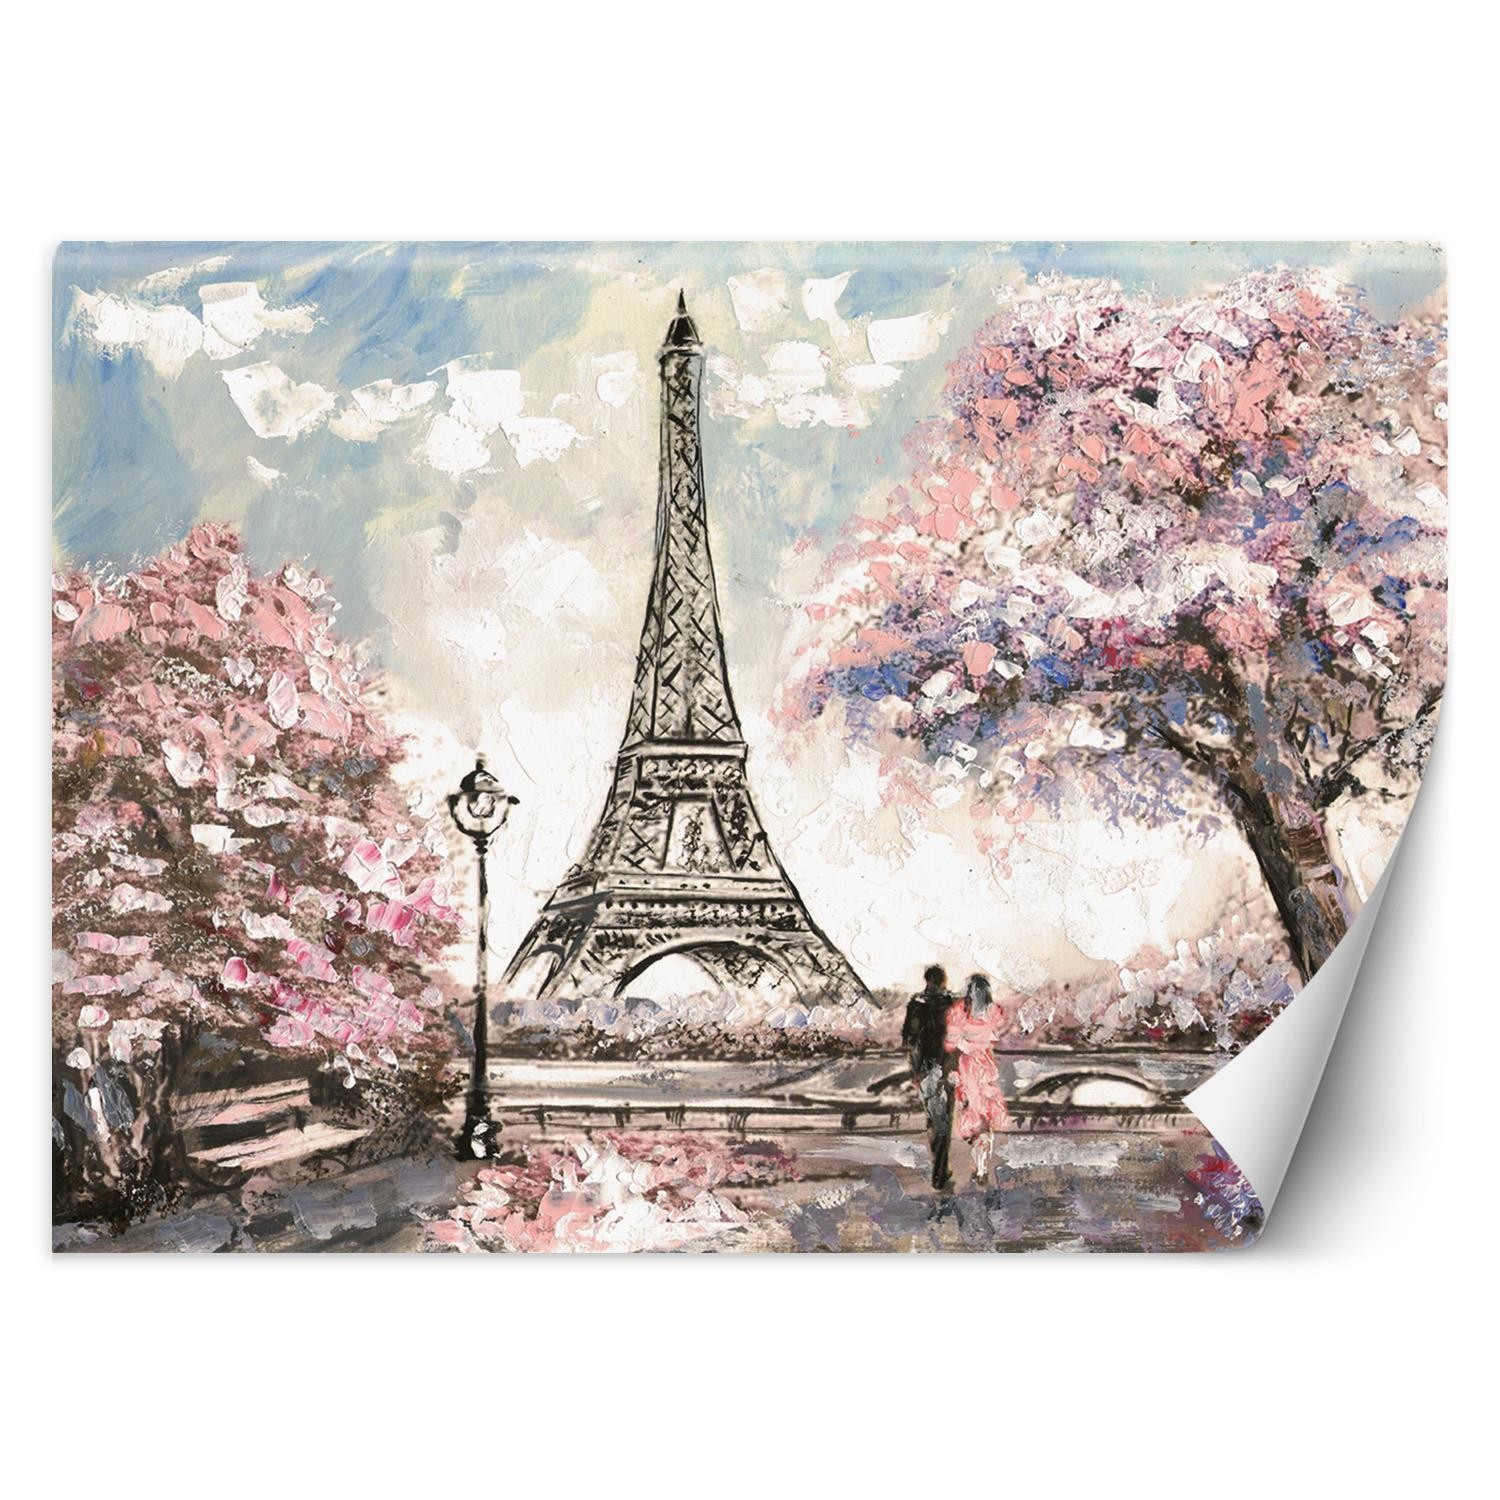 Trend24 – Behang – Parijs – Behangpapier – Fotobehang – Behang Woonkamer – 450x315x2 cm – Incl. behanglijm